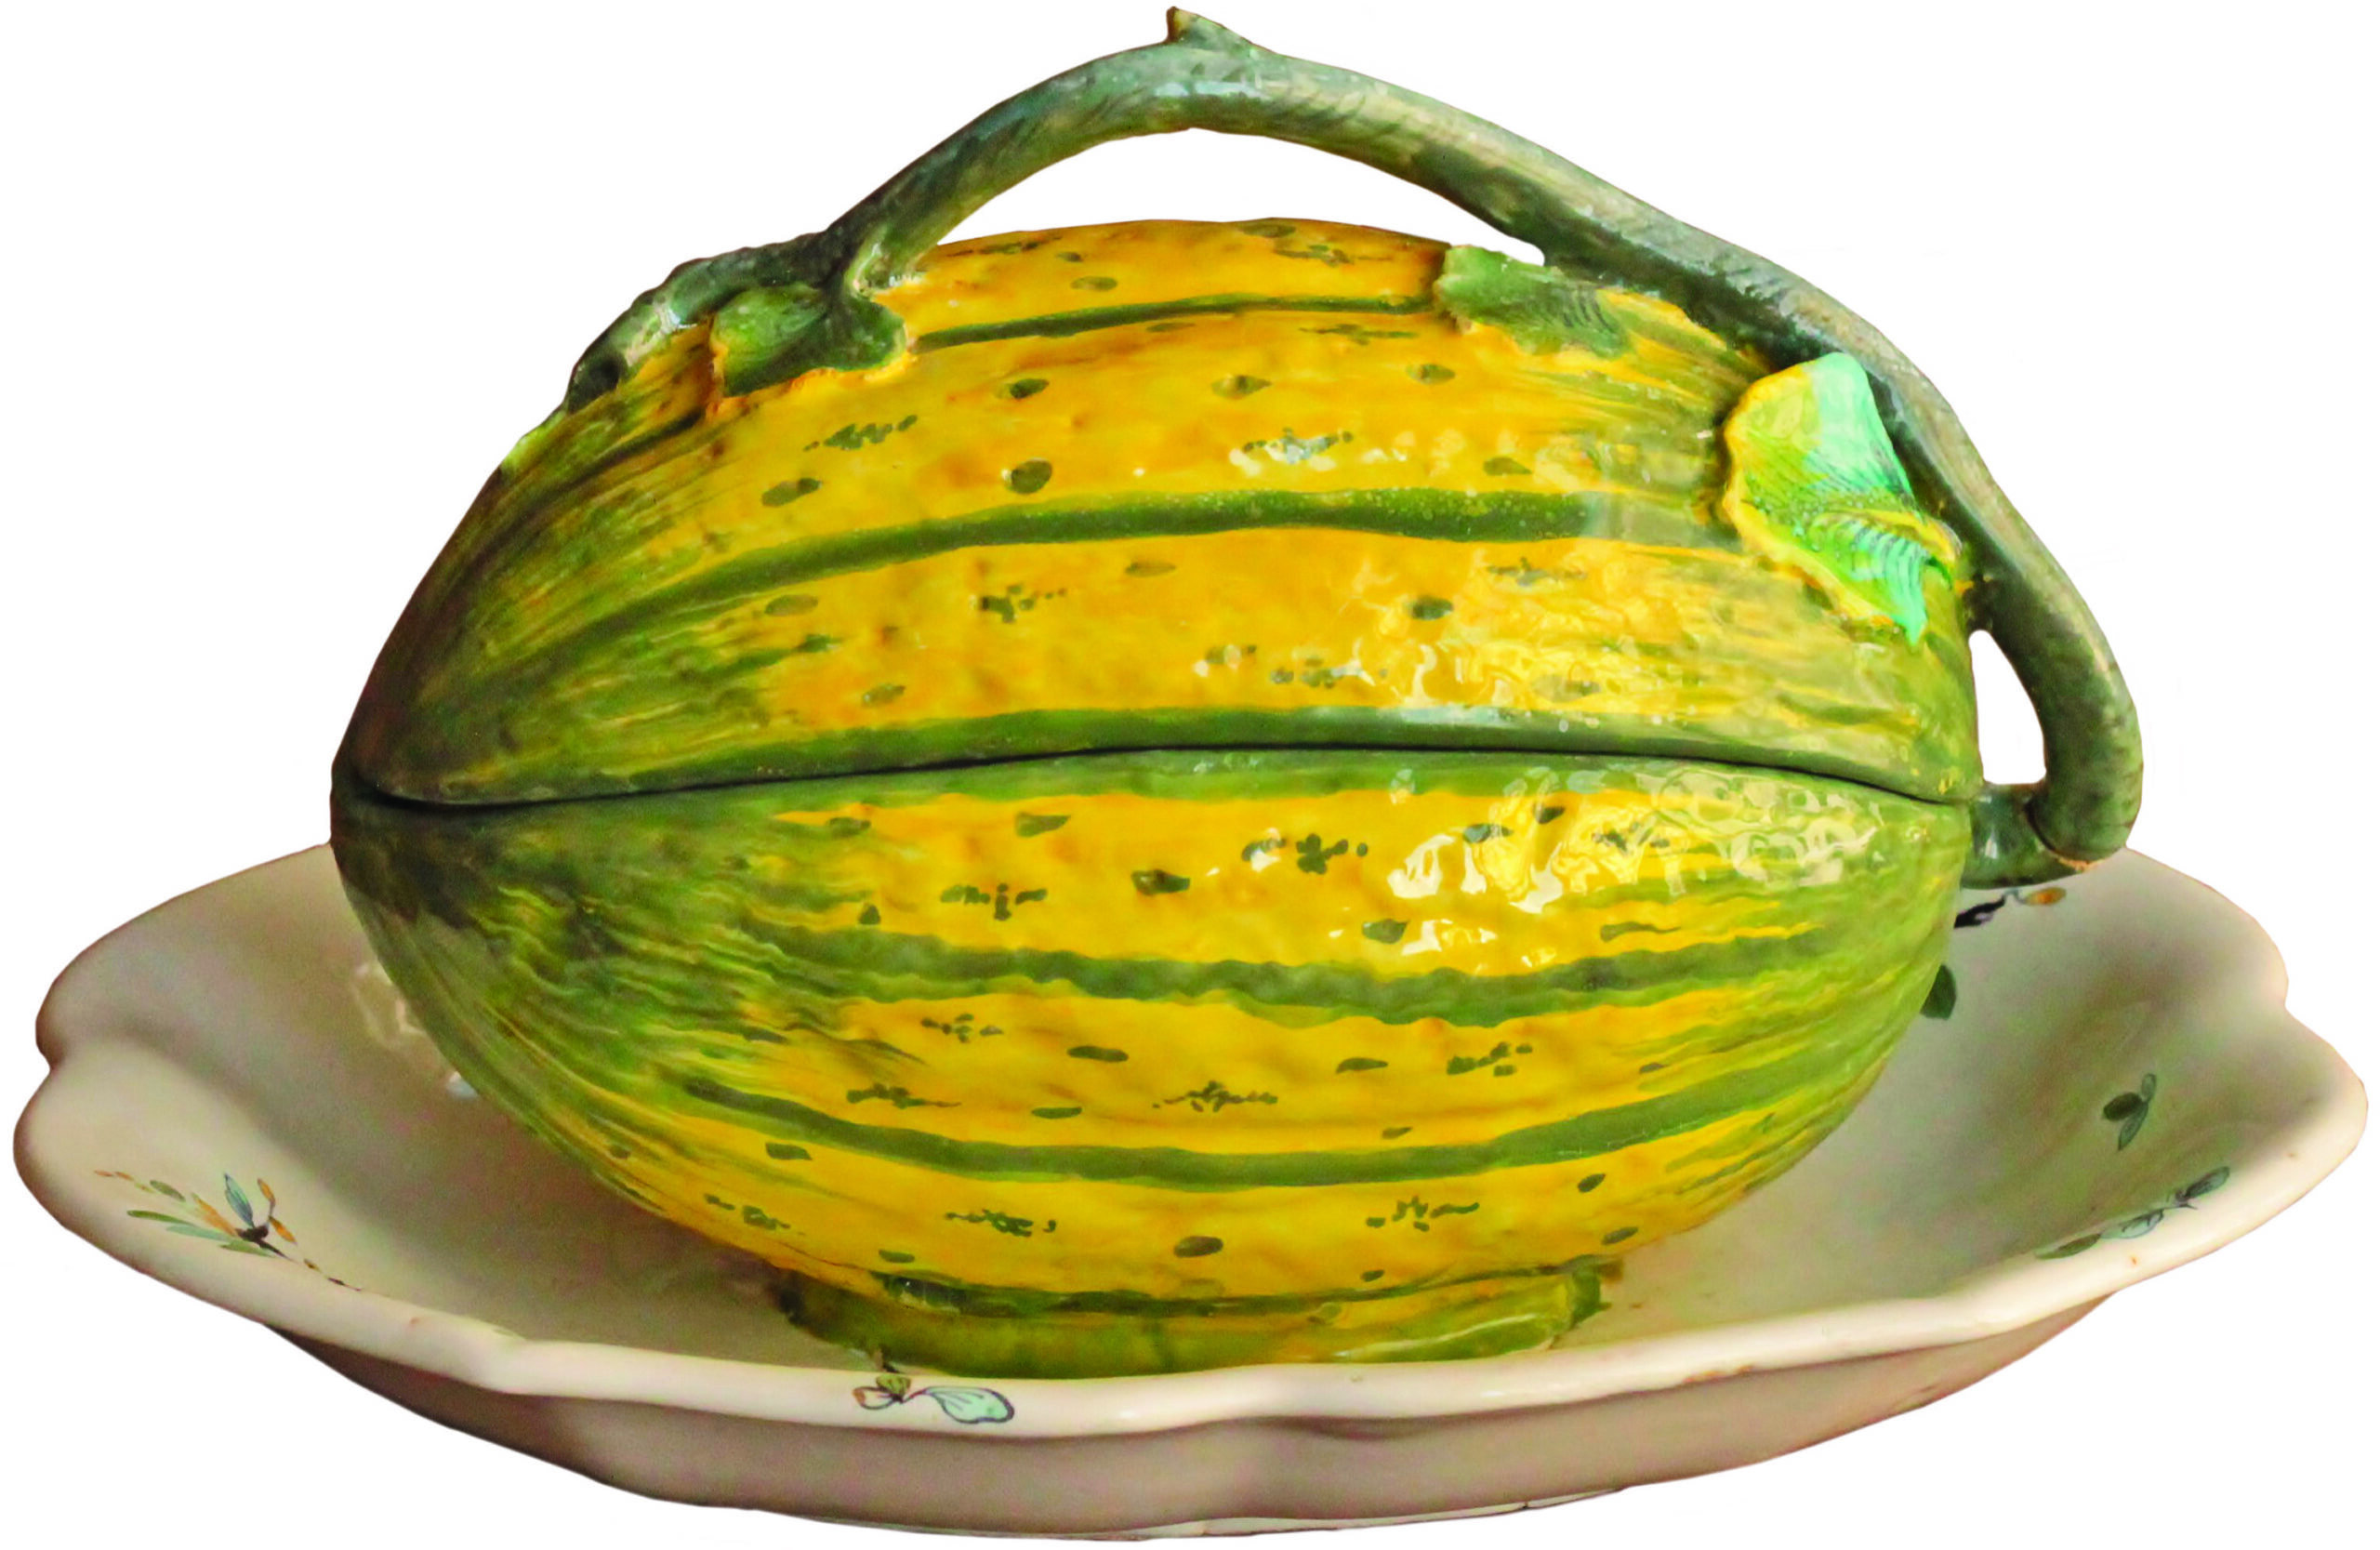 Melon d’eau en faïence de Strasbourg, période de Paul Hannong, 1744-1748, sans marque. L. 27,5 cm. Ce melon d’eau est un des premiers exemplaires de trompe-l’œil. Galerie Béalu. Photo service de presse. © DR